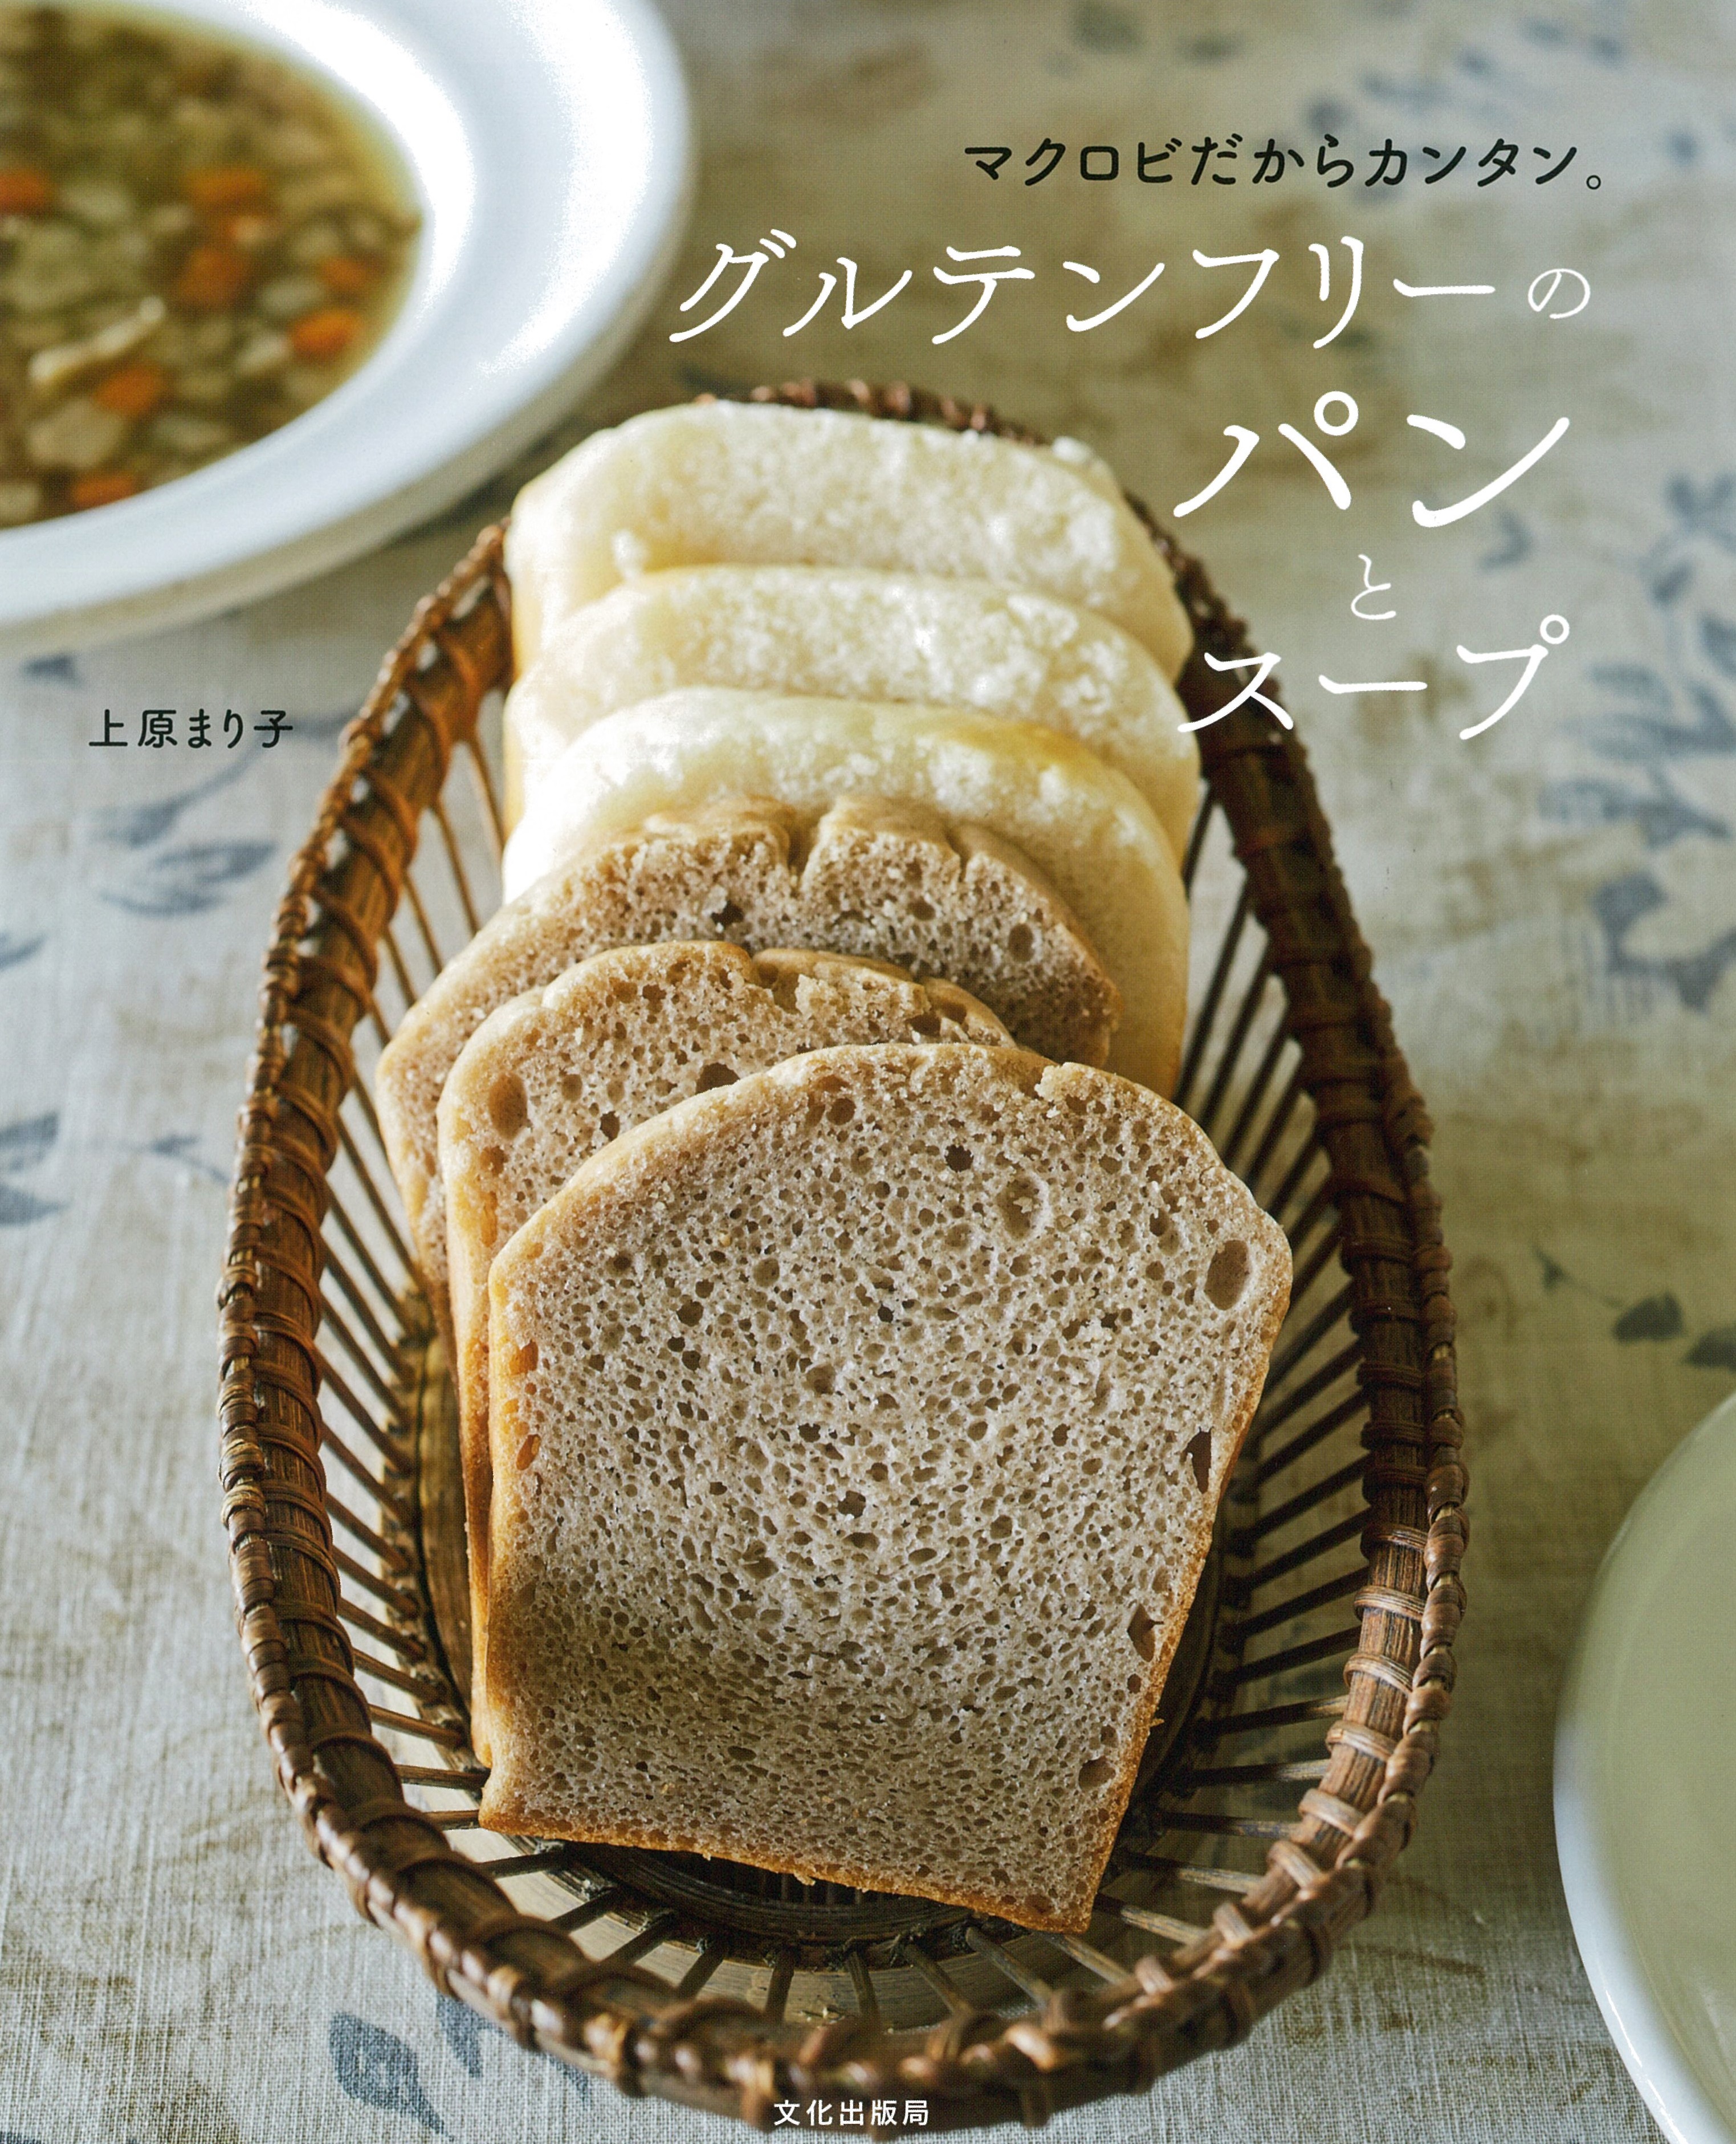 グルテンフリーのパンとスープの商品画像